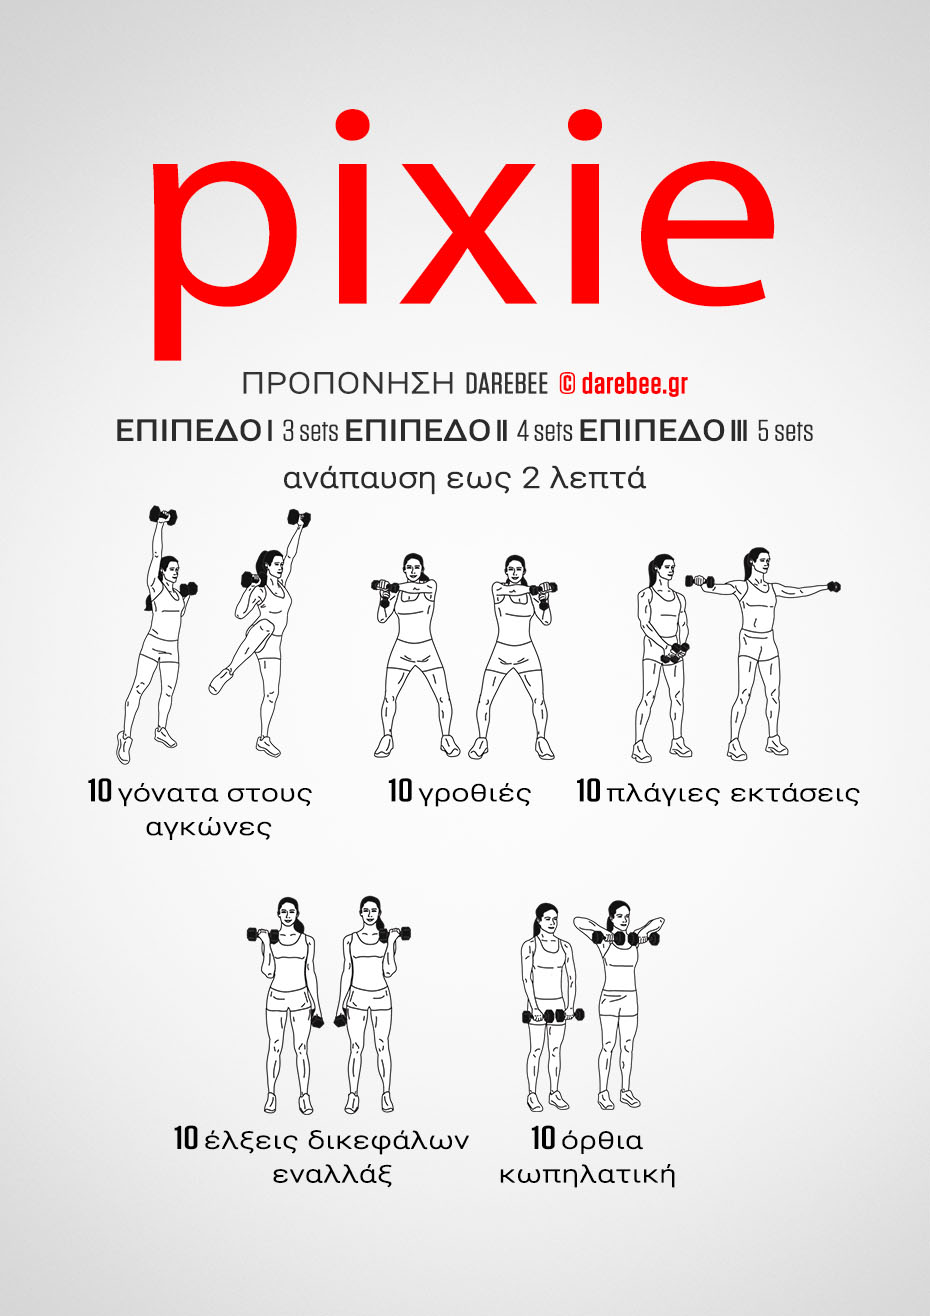  Pixie είναι μια προπόνηση απο το Darebee.GR με αλτήρες στο πάνω μέρος του σώματος που θα σας βοηθήσει να χτίσετε τη δύναμη του άνω μέρους του σώματος προπόνηση δύναμης.